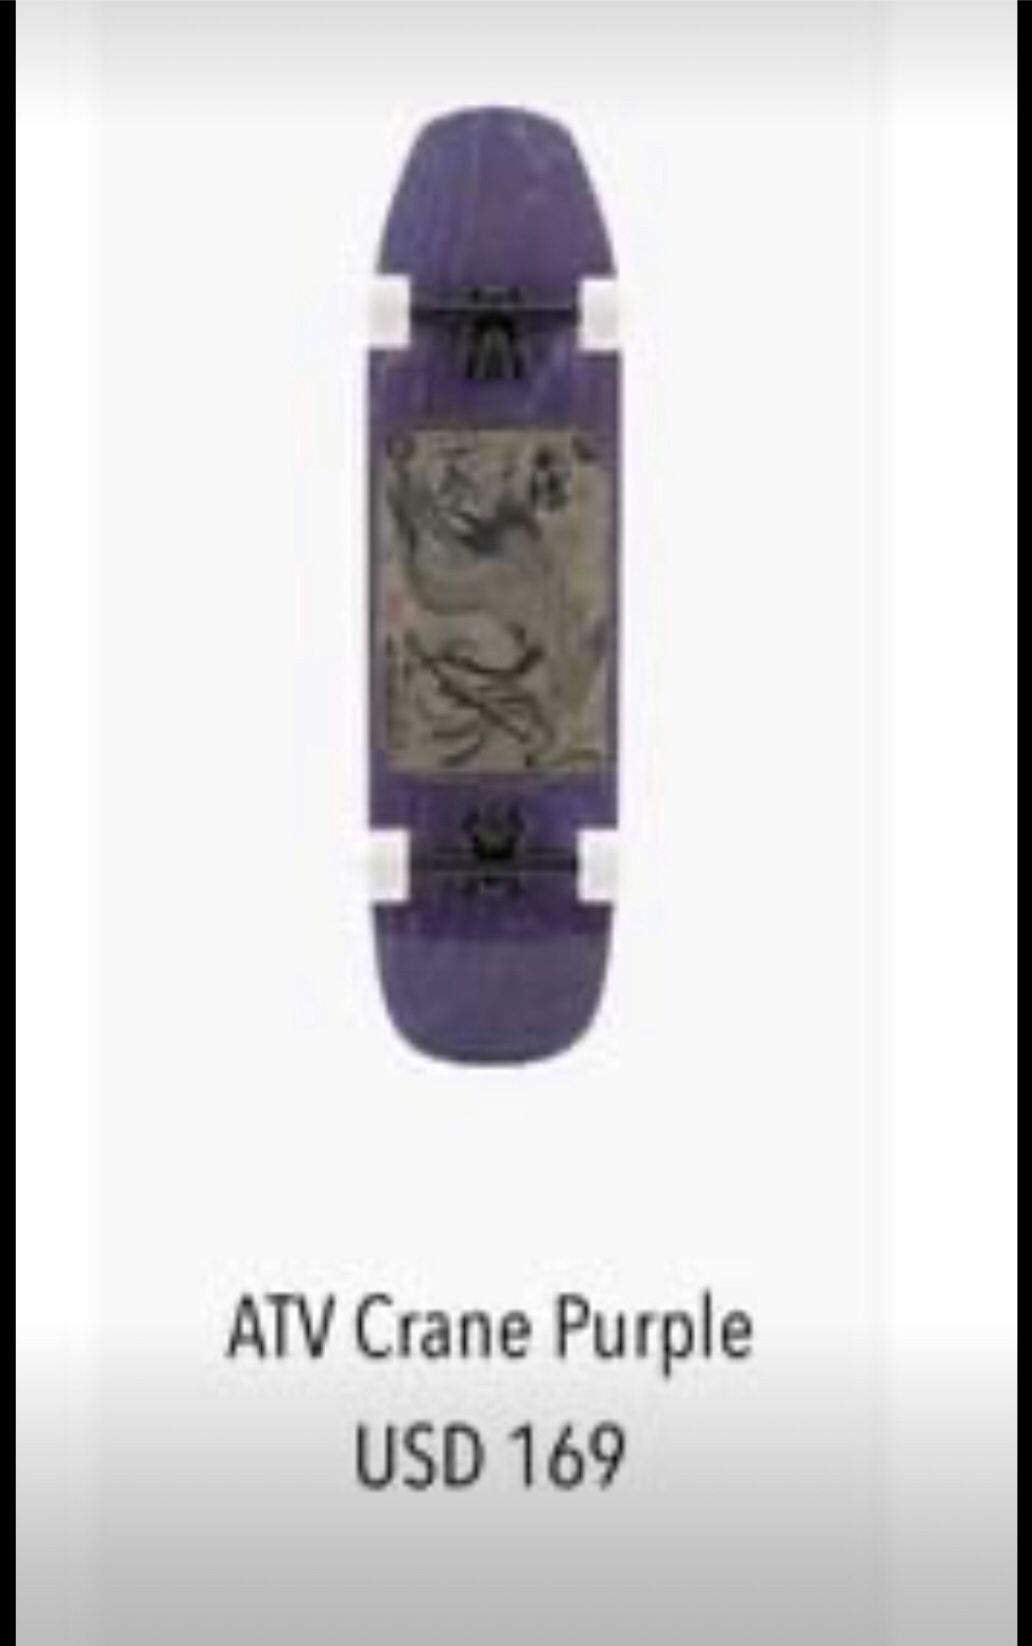 Atv crane purple over skateboard